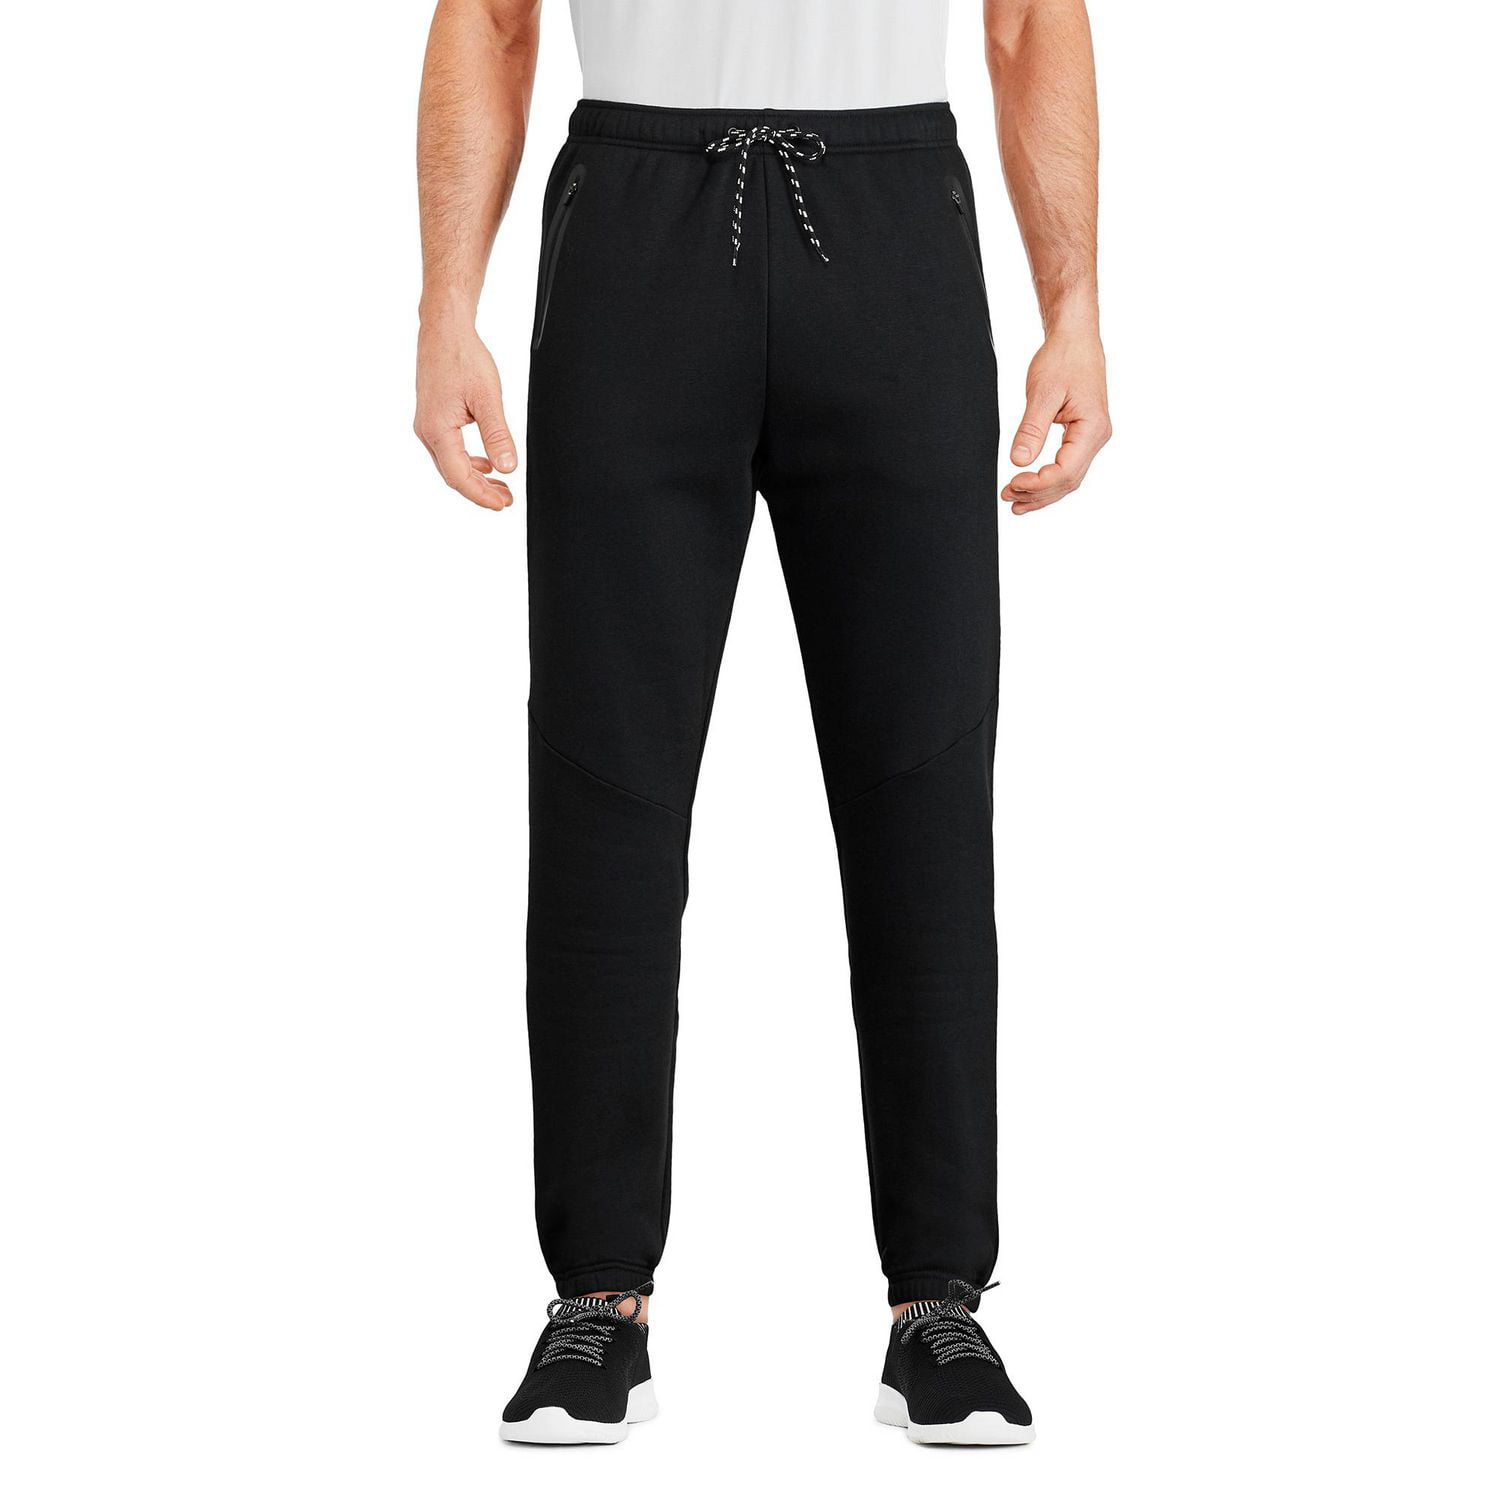 Athletic Works Dri Works Men’s Pants Rich Black Size S (28-30)